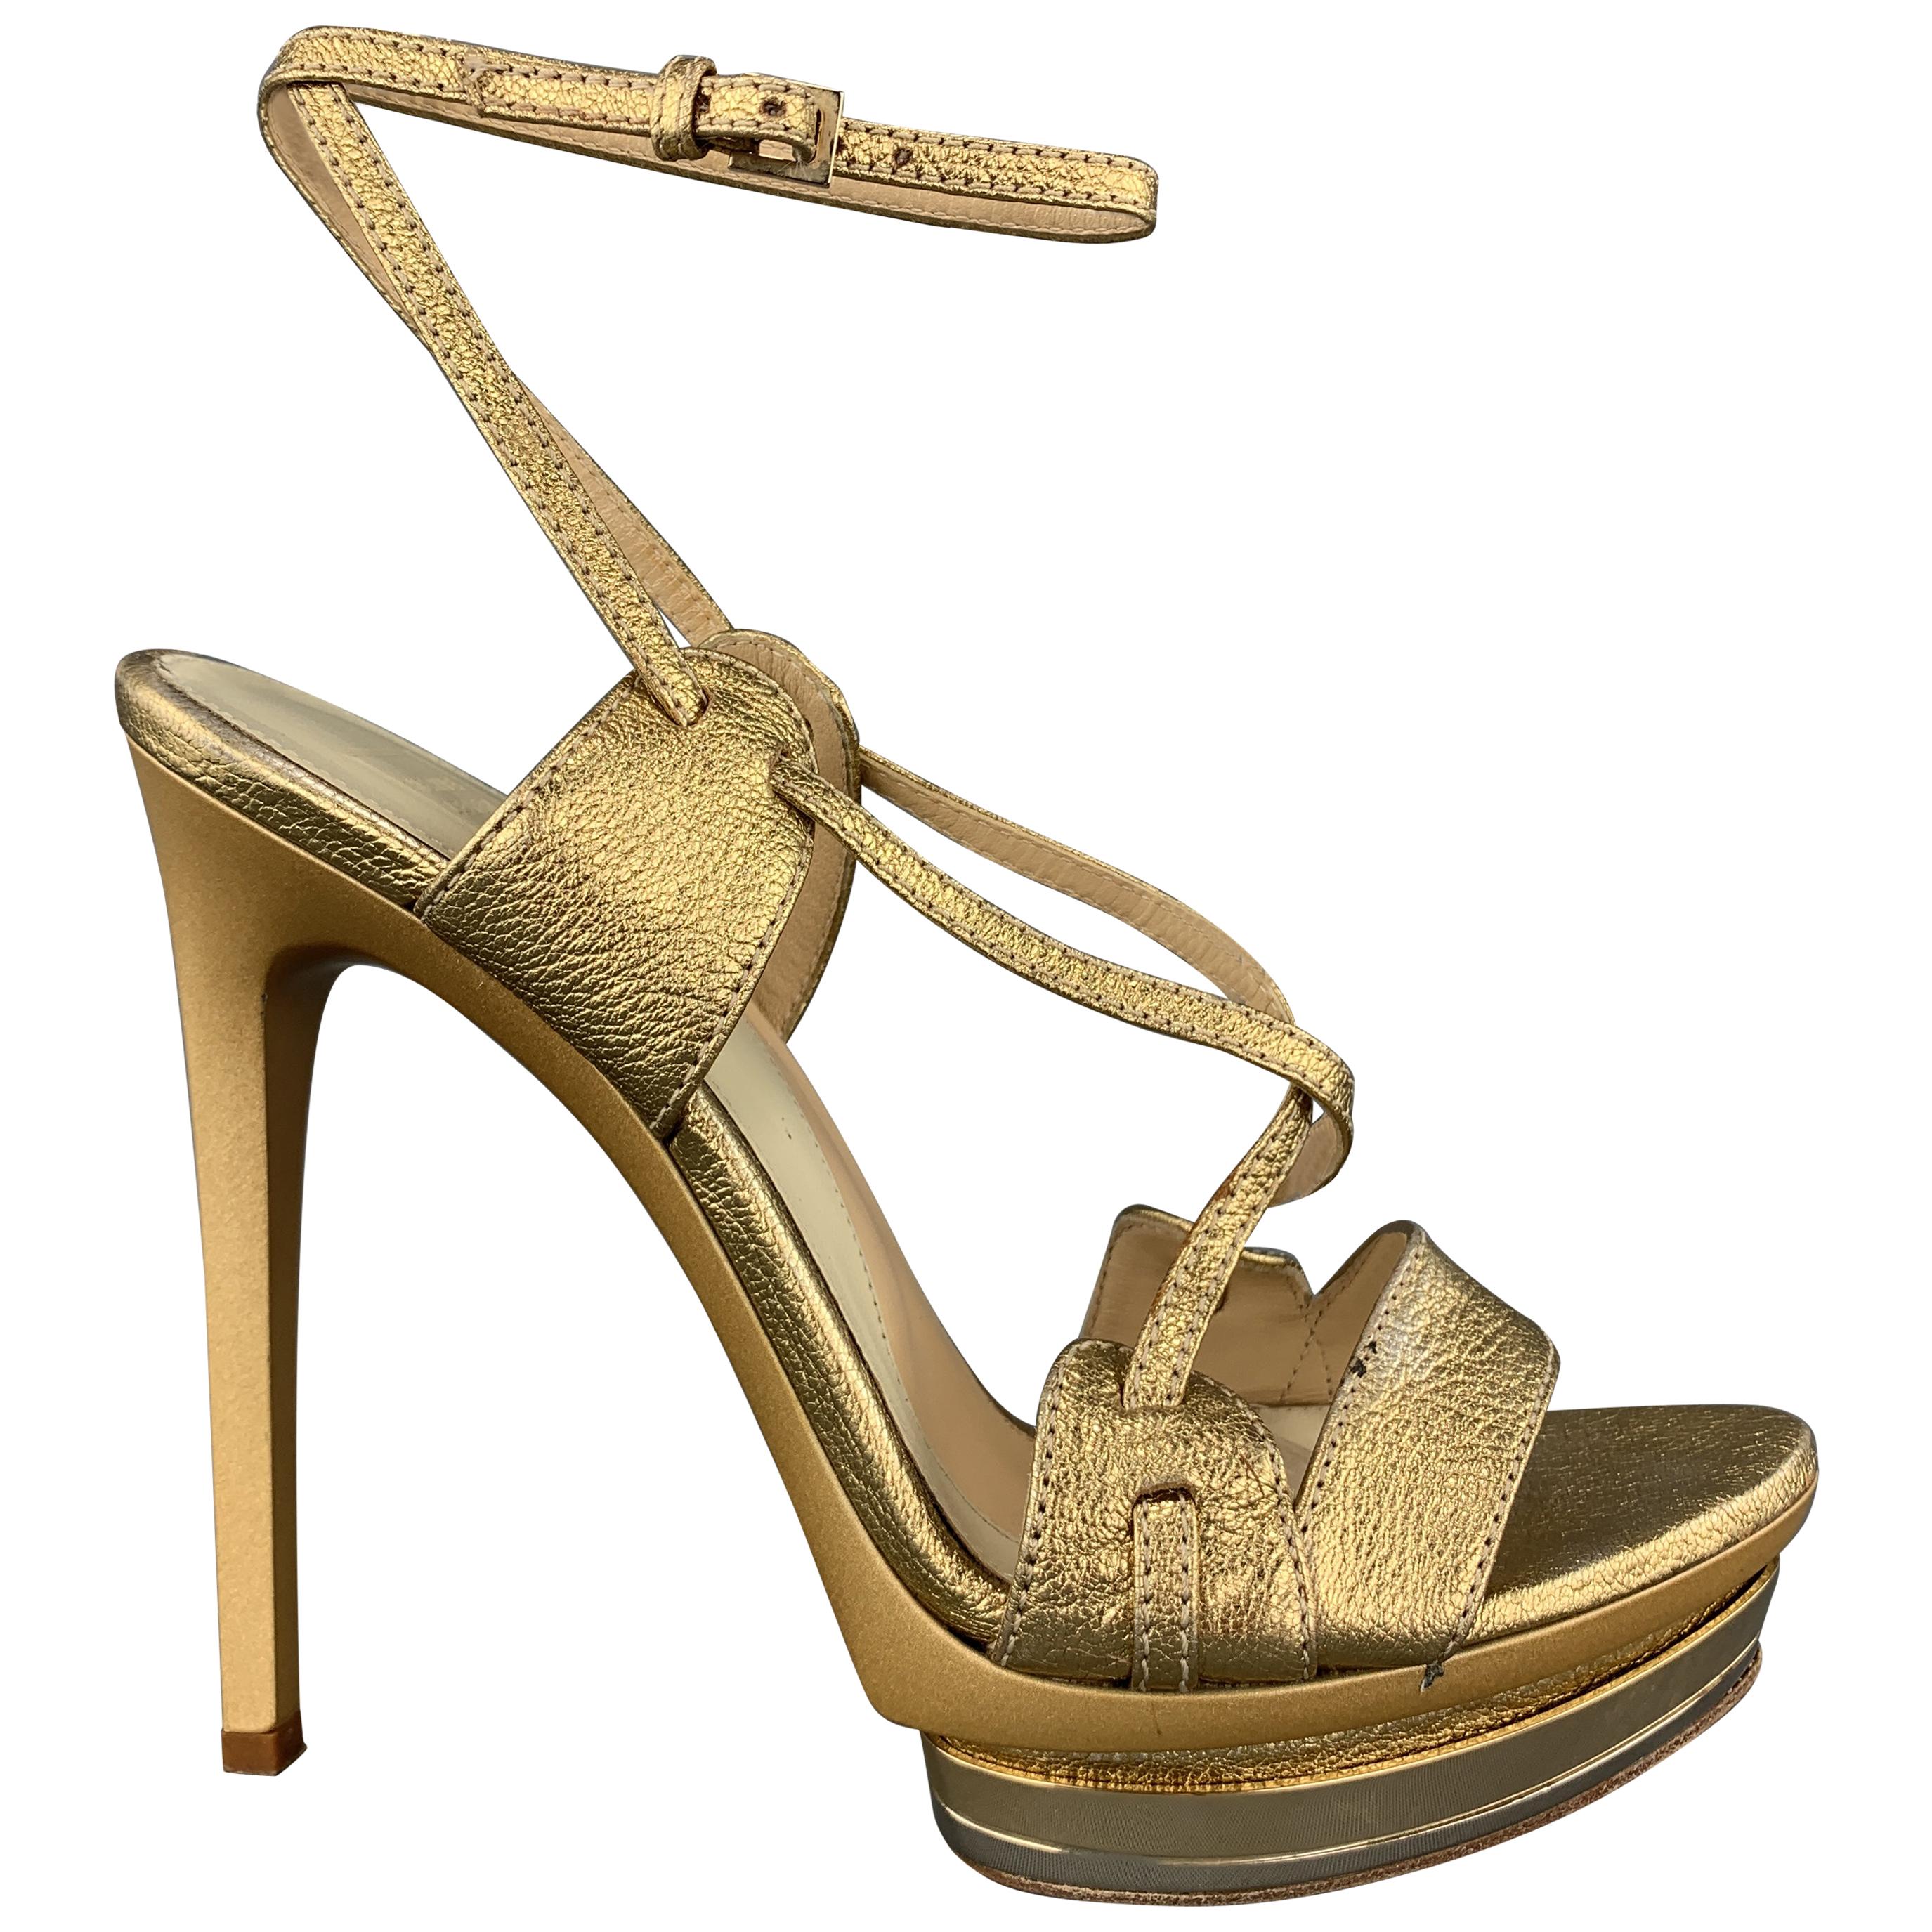 HERVE LEGER Size 7 Metallic Gold Leather Platform Sandals